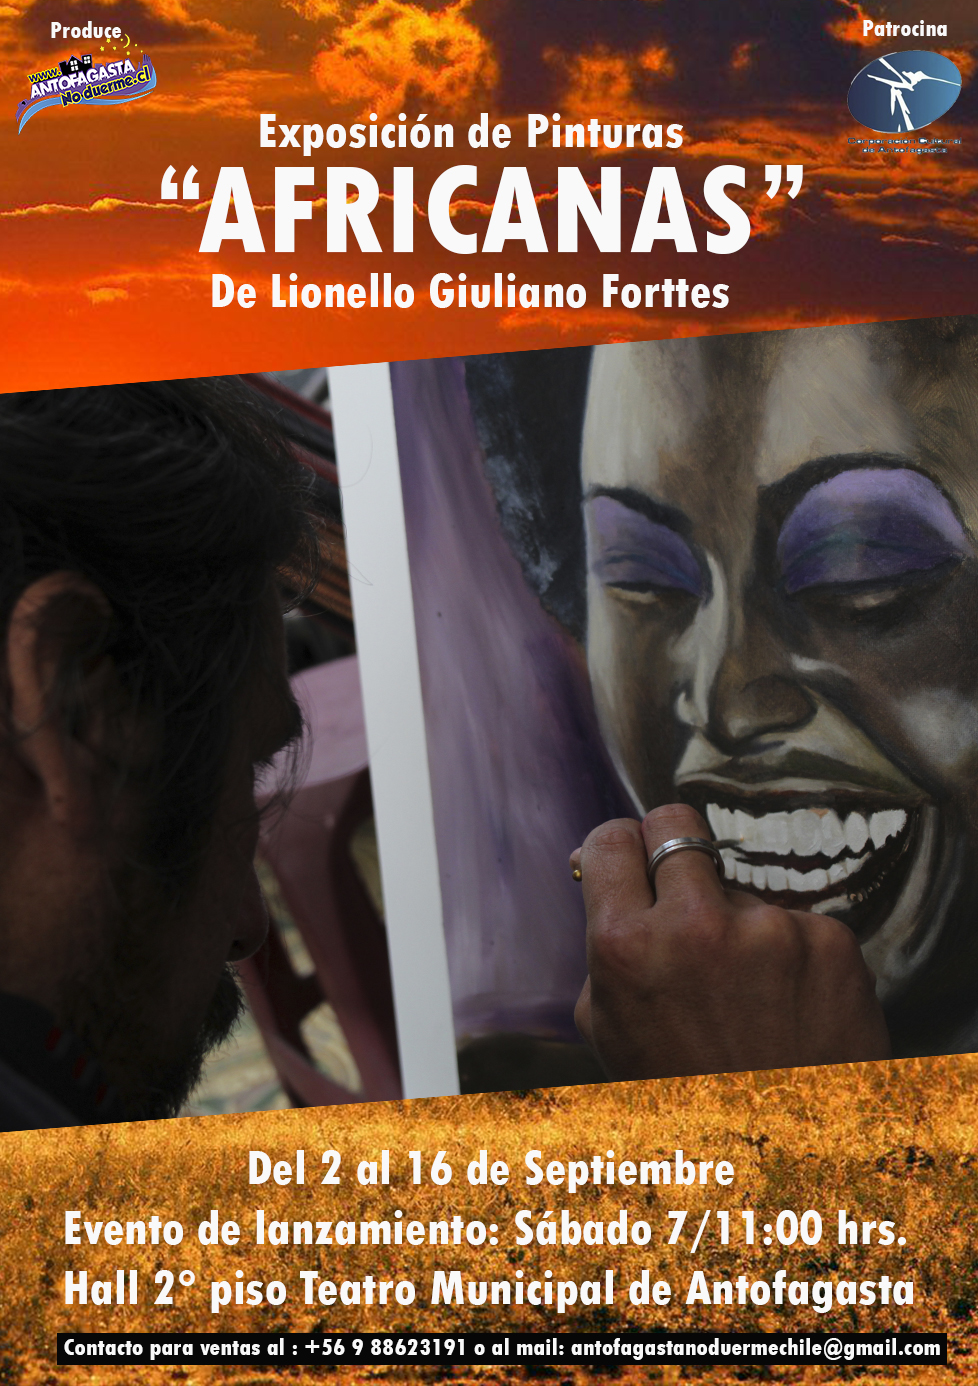 Exposición “Africanas” desde hoy en el Teatro Municipal de Antofagasta